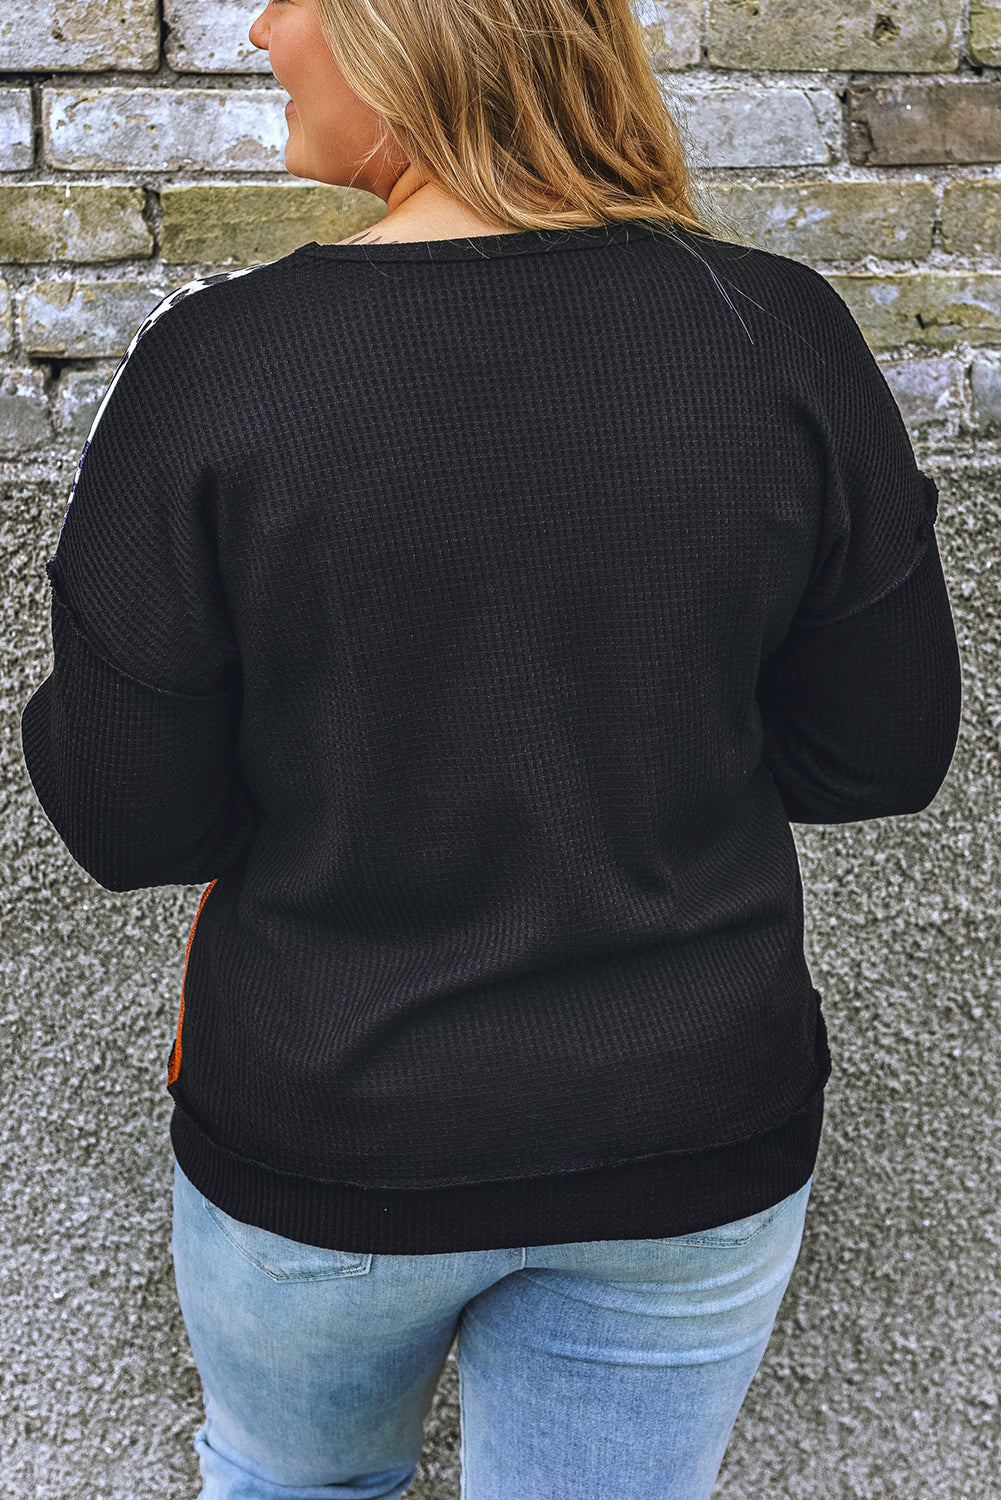 Crno-narančasta majica veće veličine s leopard patchwork pletenim tkanjem u boji